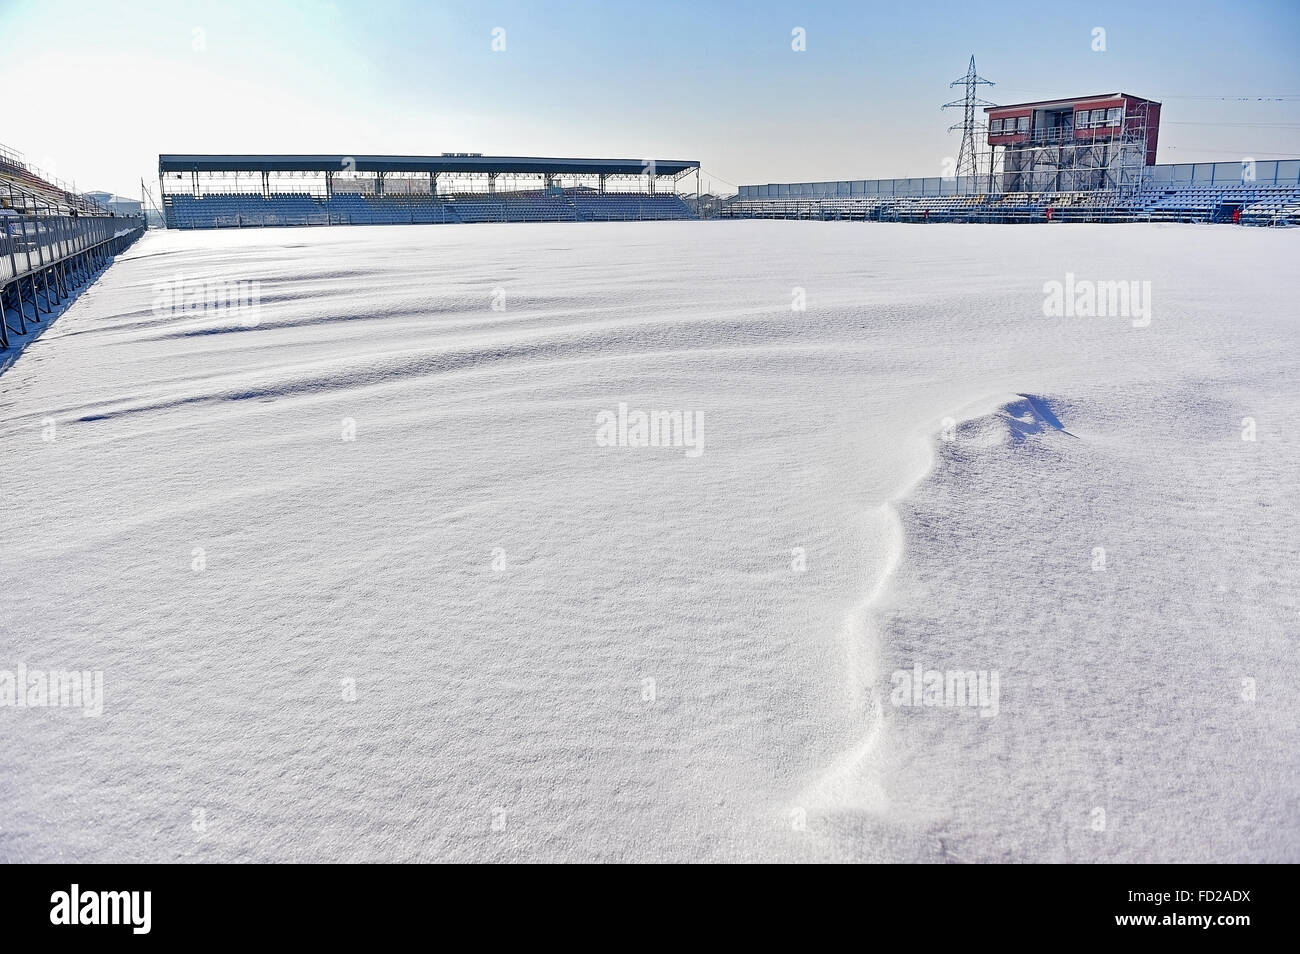 Leeren Tribünen und ein Fußballstadion mit Schnee bedeckt nach starkem Schneefall Stockfoto